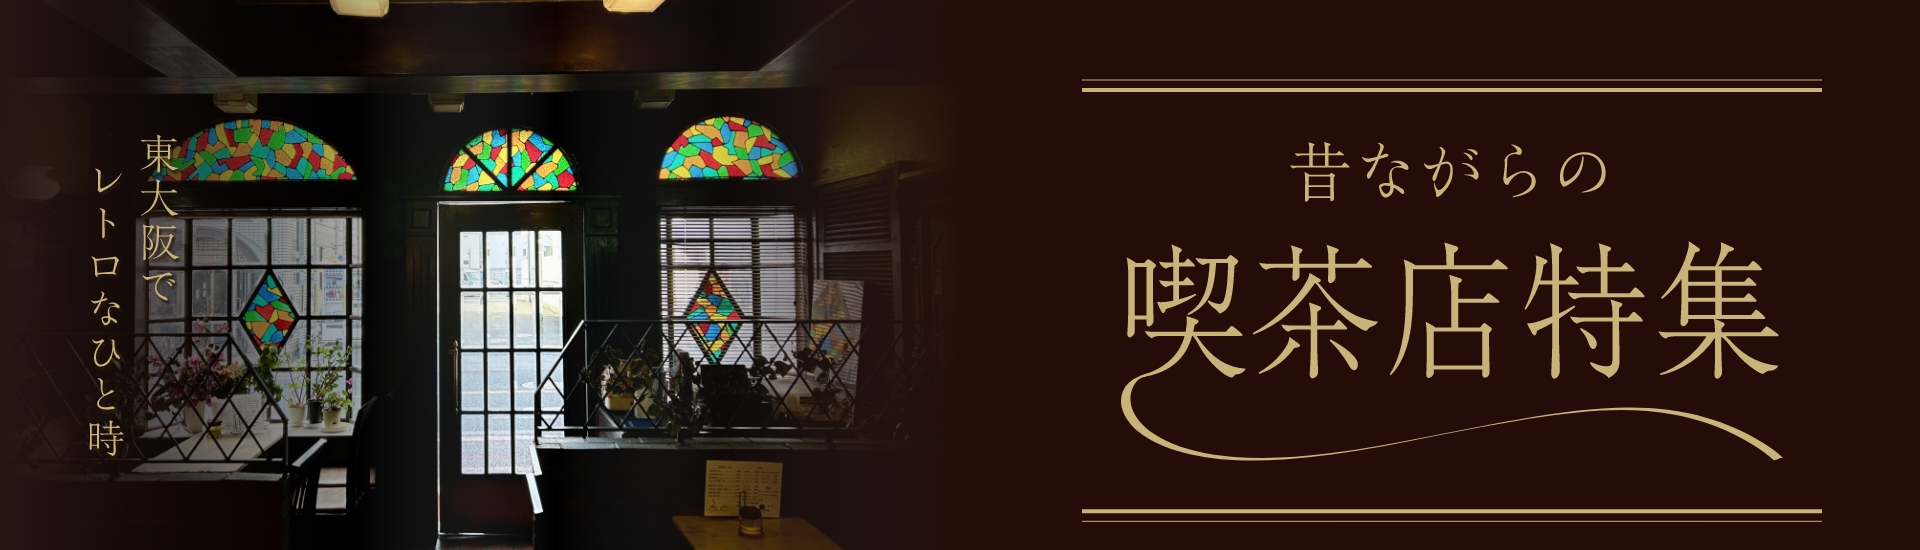 東大阪でレトロなひと時-昔ながらの喫茶店特集